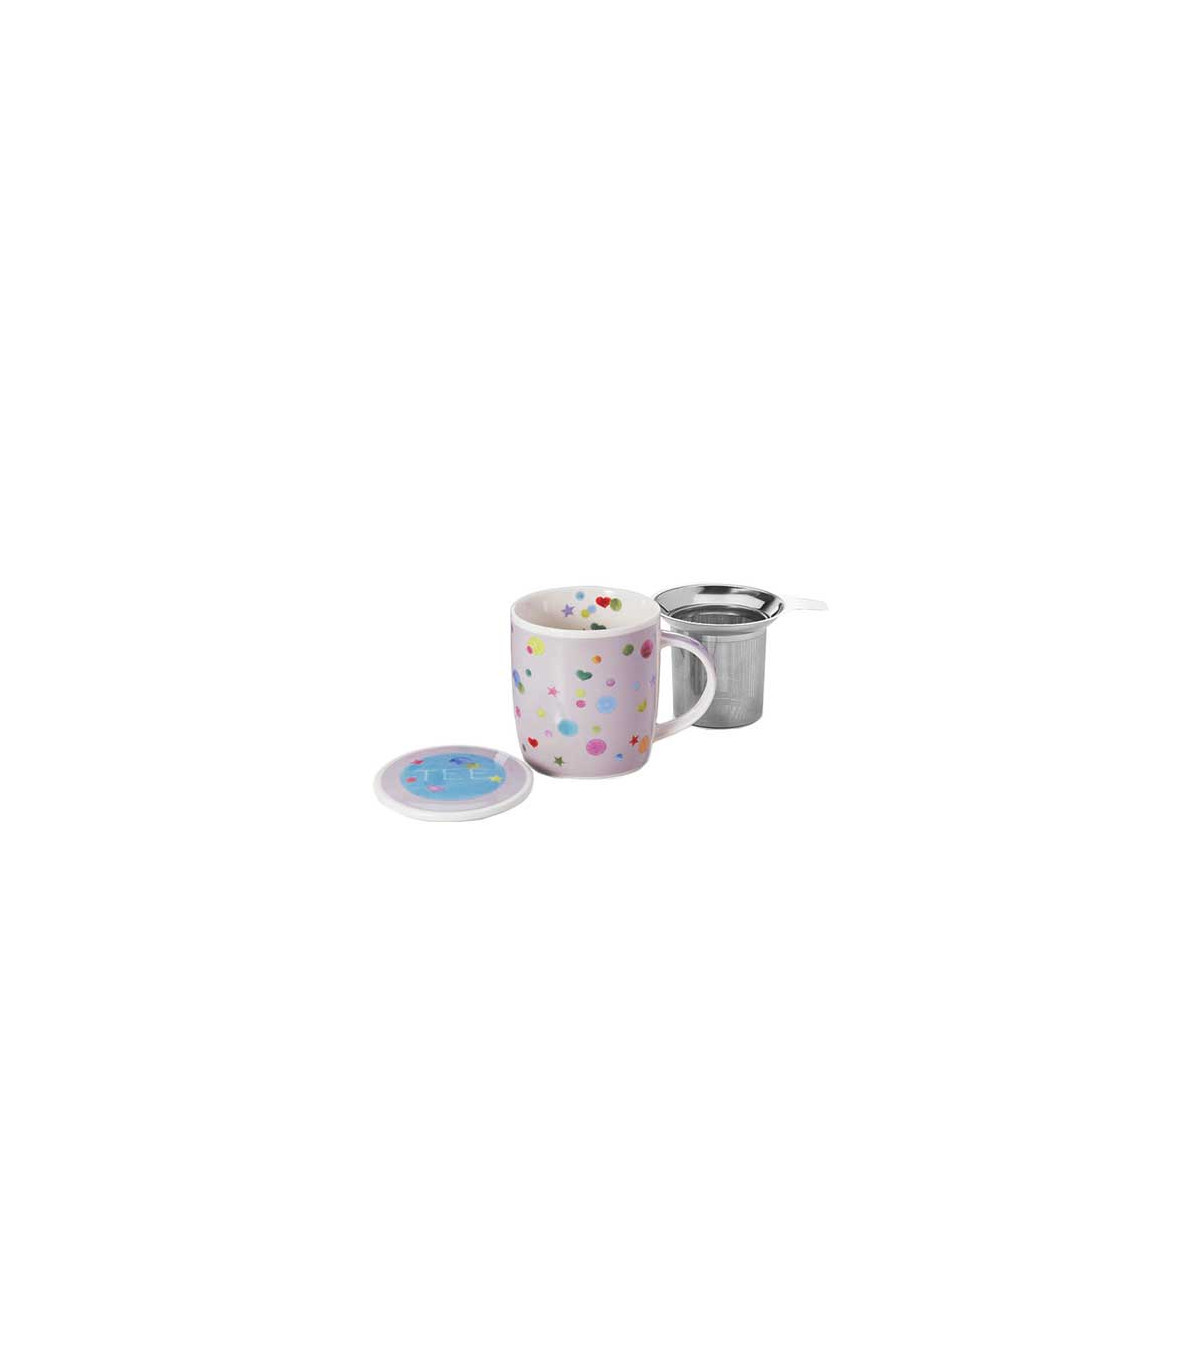 Taza confetti, porcelana 0,32 l. filtro y tapa: 14,50 €